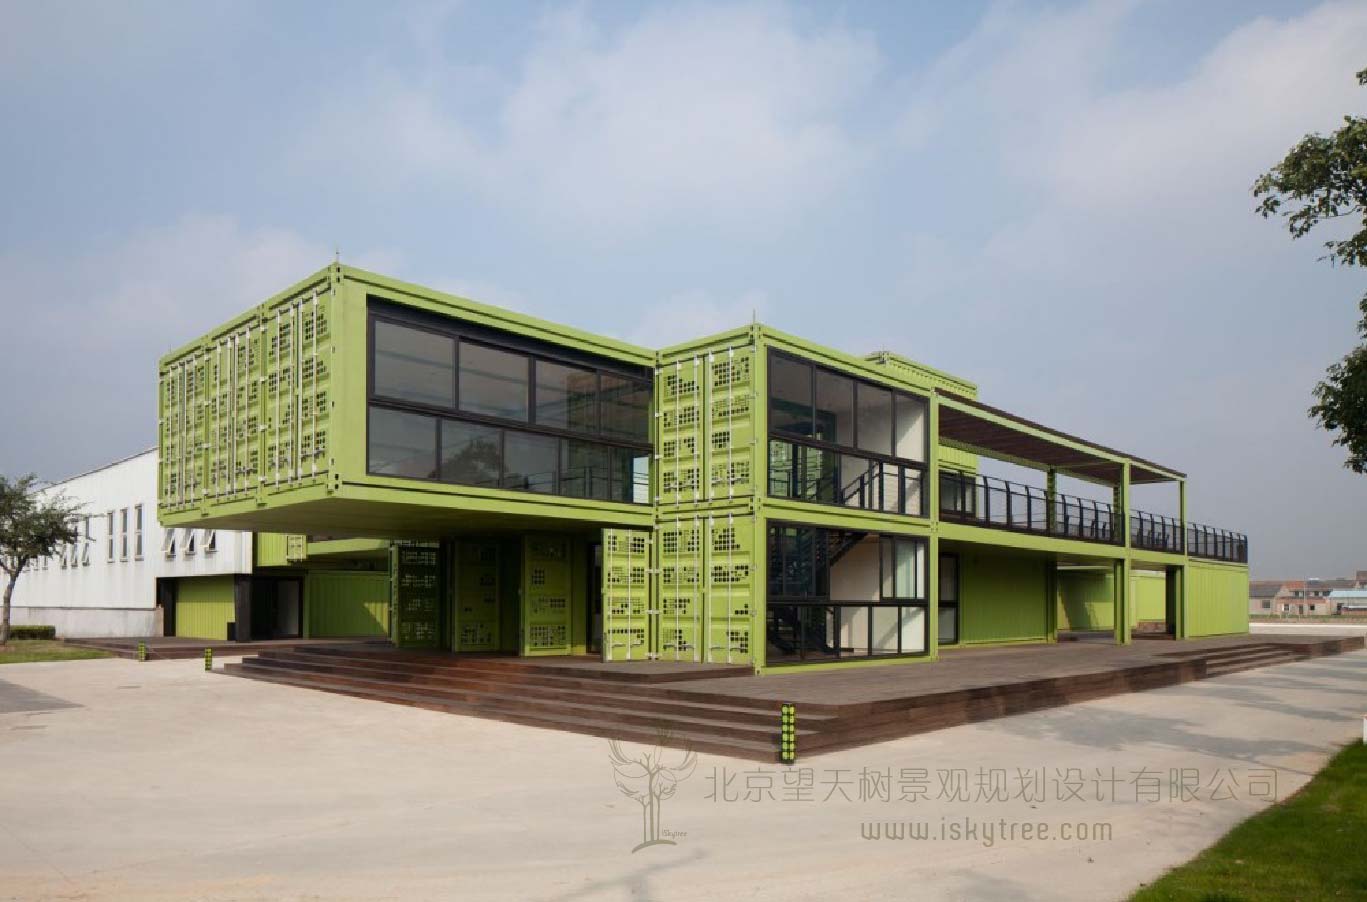 上海多利农庄集装箱可持续绿色建筑设计